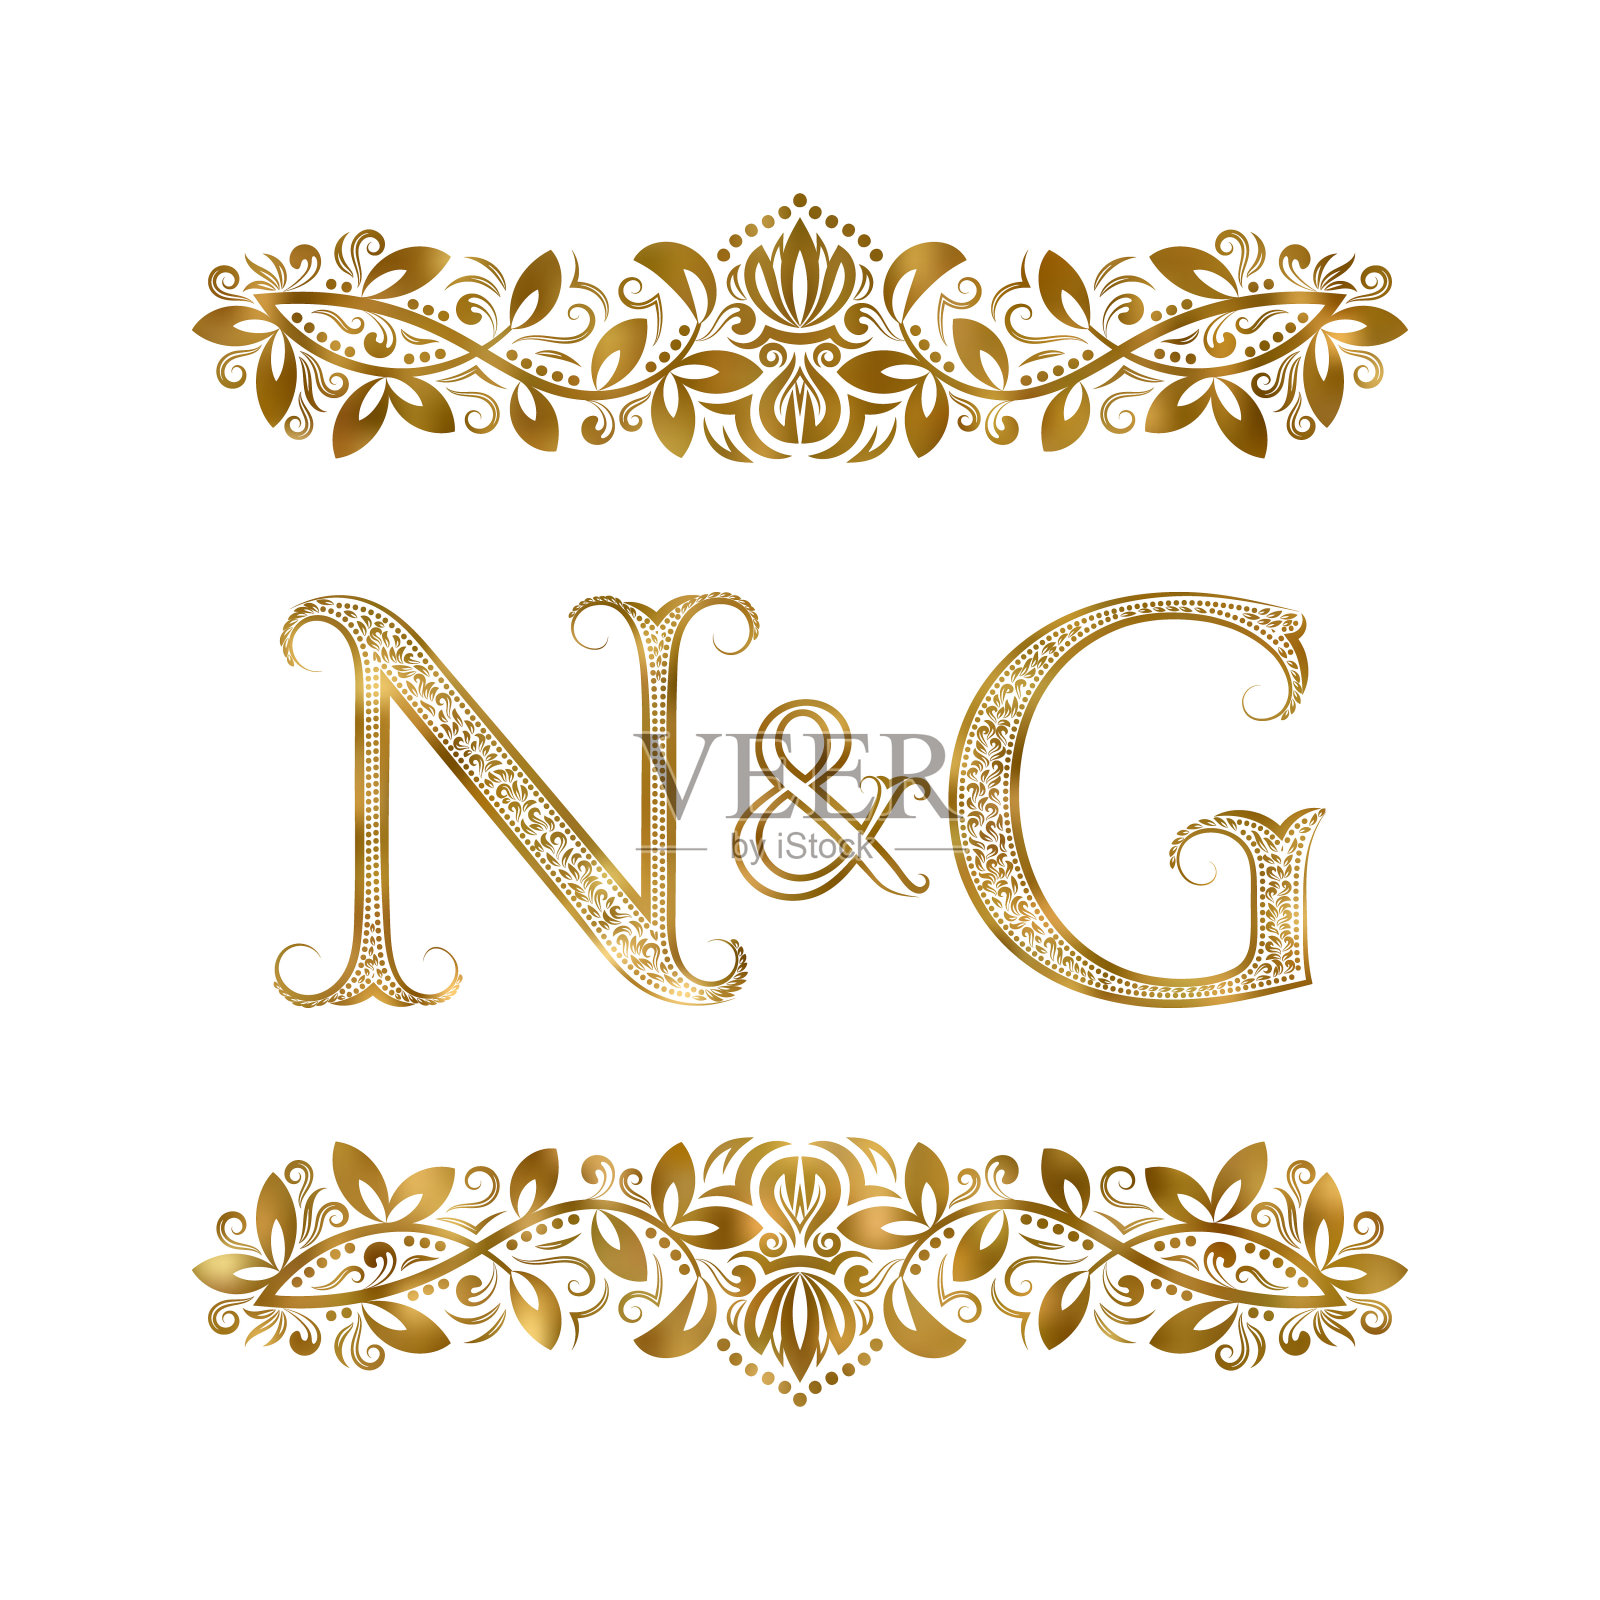 N和G复古的首字母符号。字母周围有装饰元素。皇室风格的婚礼或商业伙伴的字母组合。插画图片素材